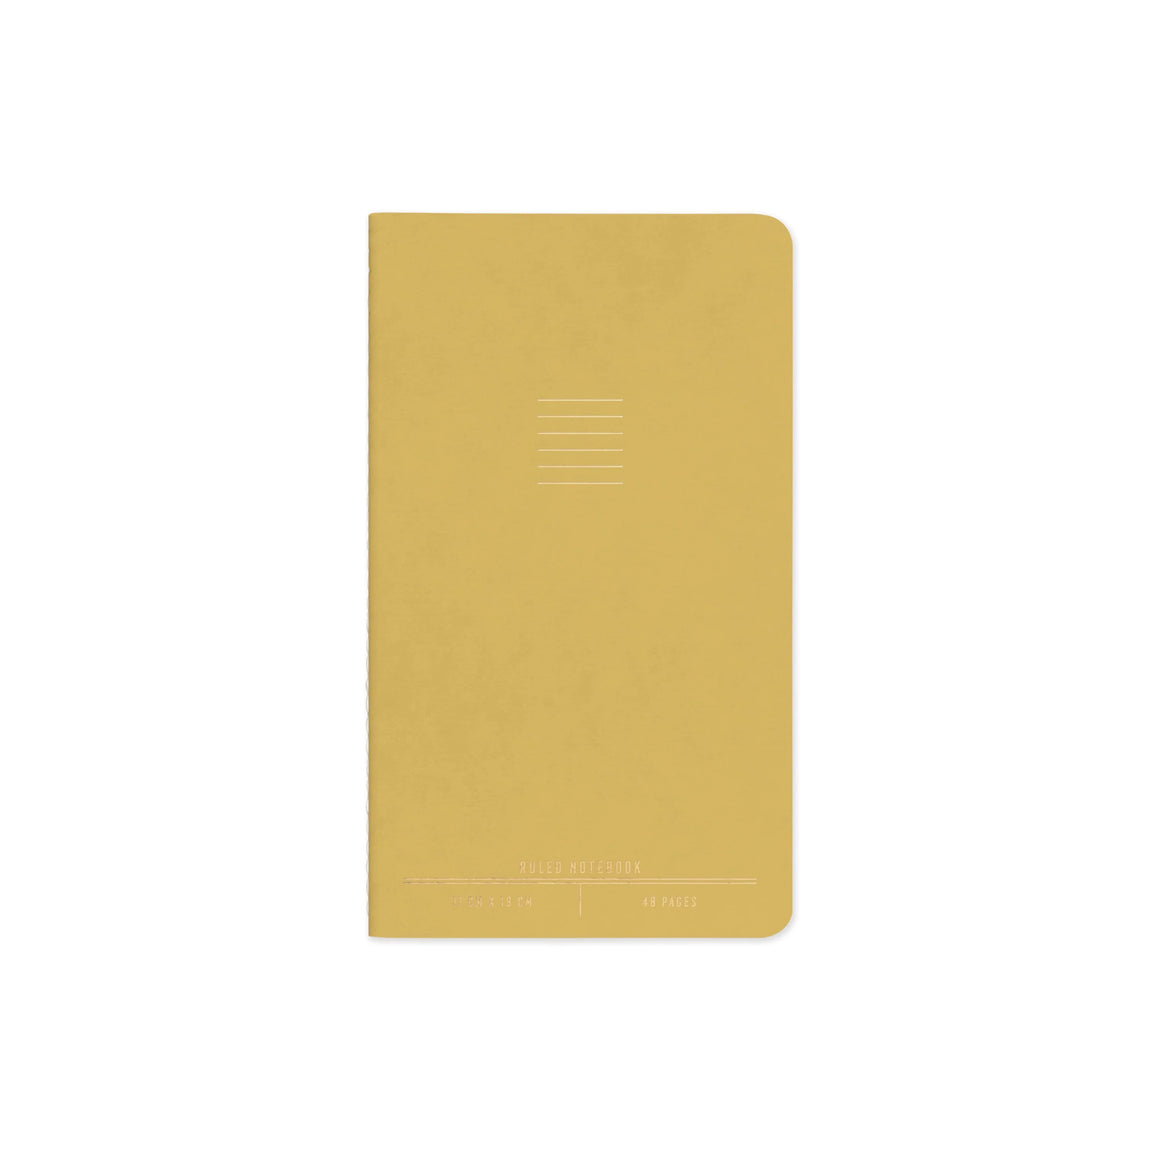 Designworks Ink Flex Notebook - Lemon